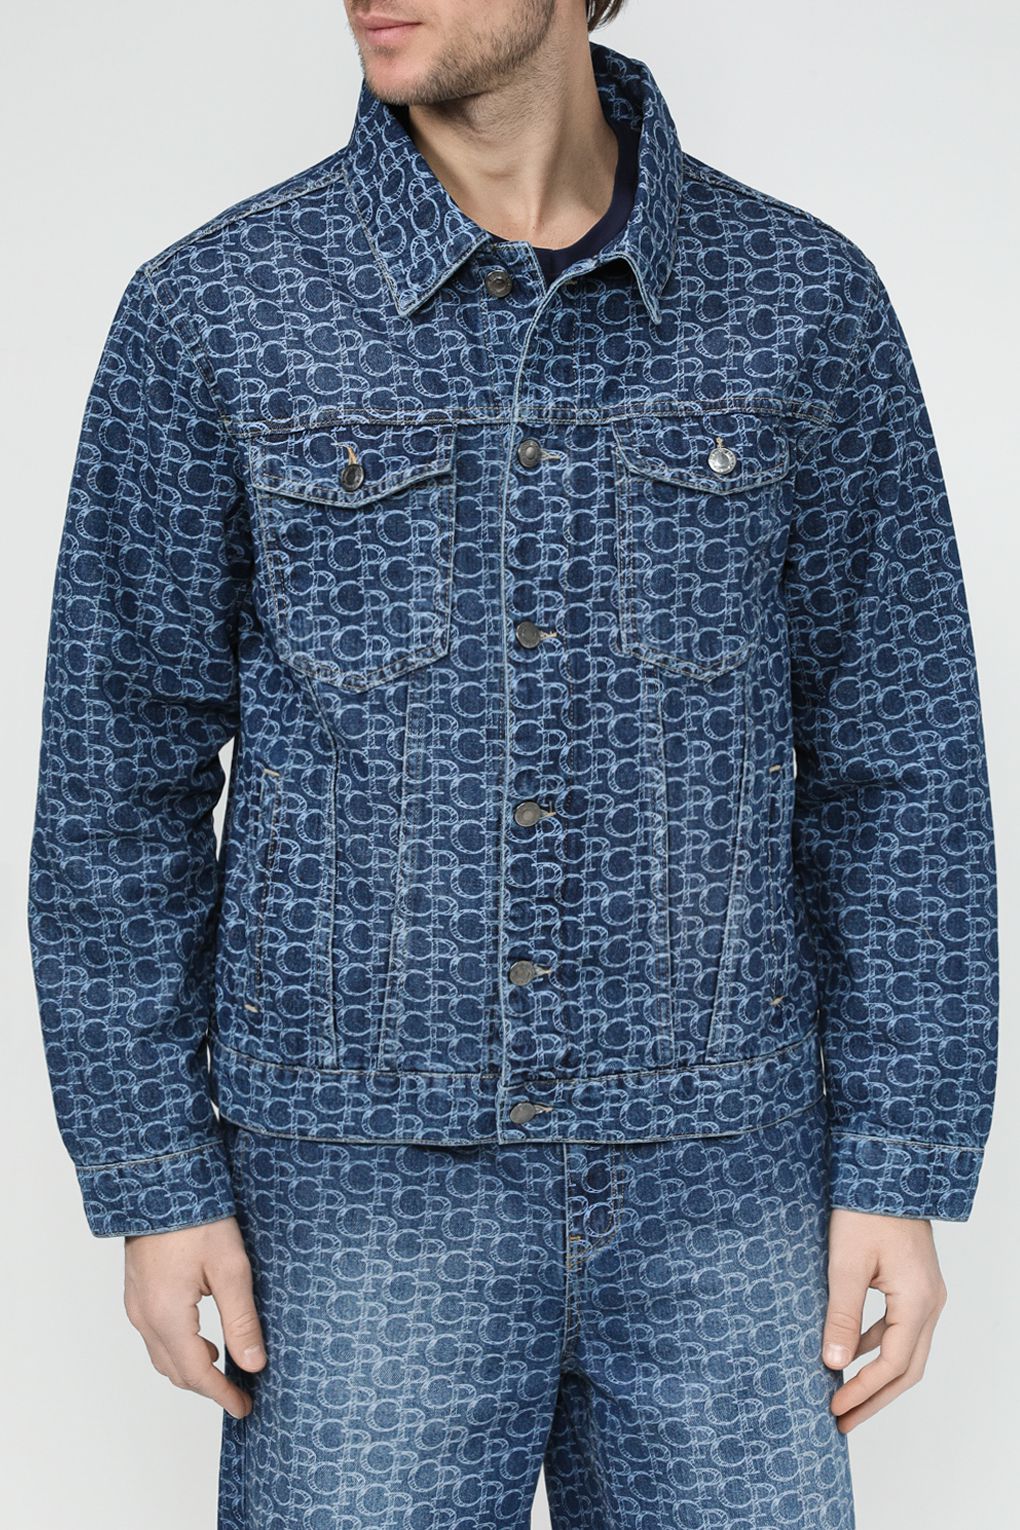 Джинсовая куртка мужская COLORPLAY CP24029348-105 синяя 46 RU